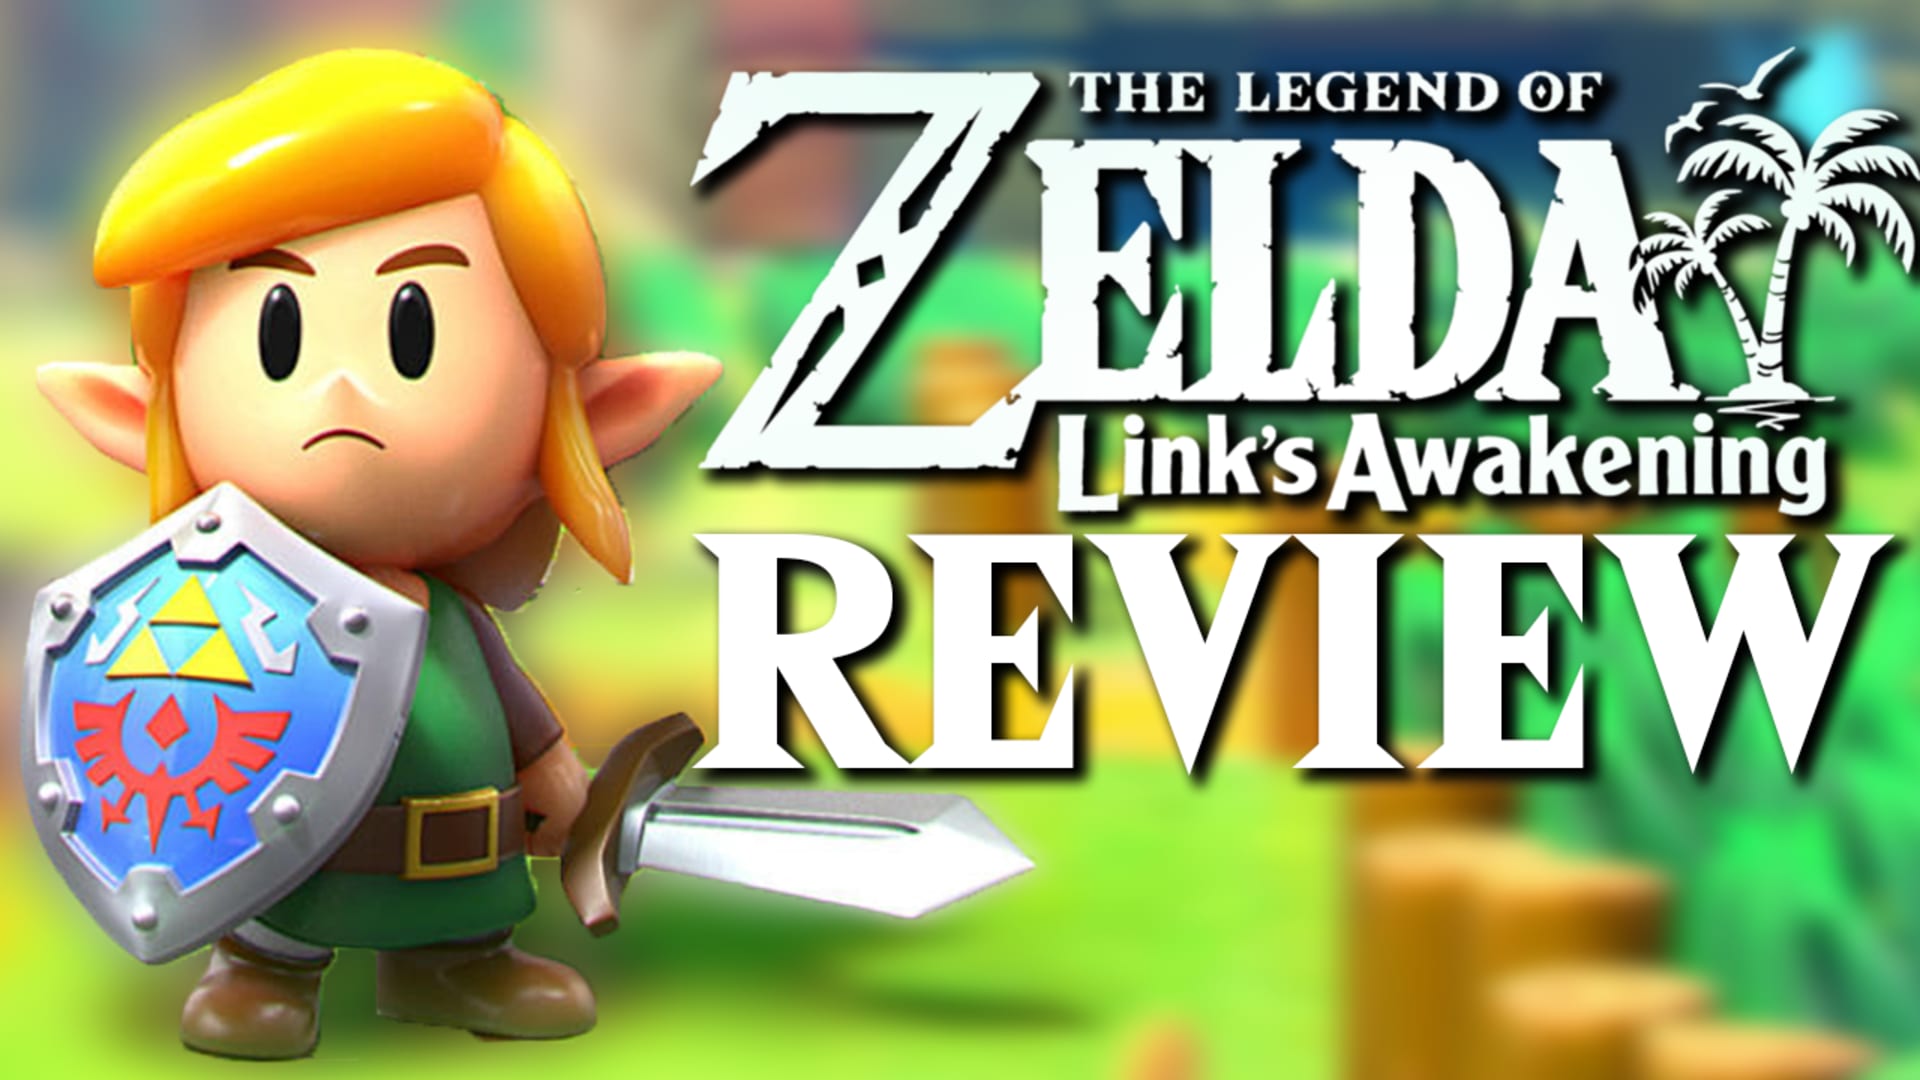 The Legend of Zelda: Link's Awakening review